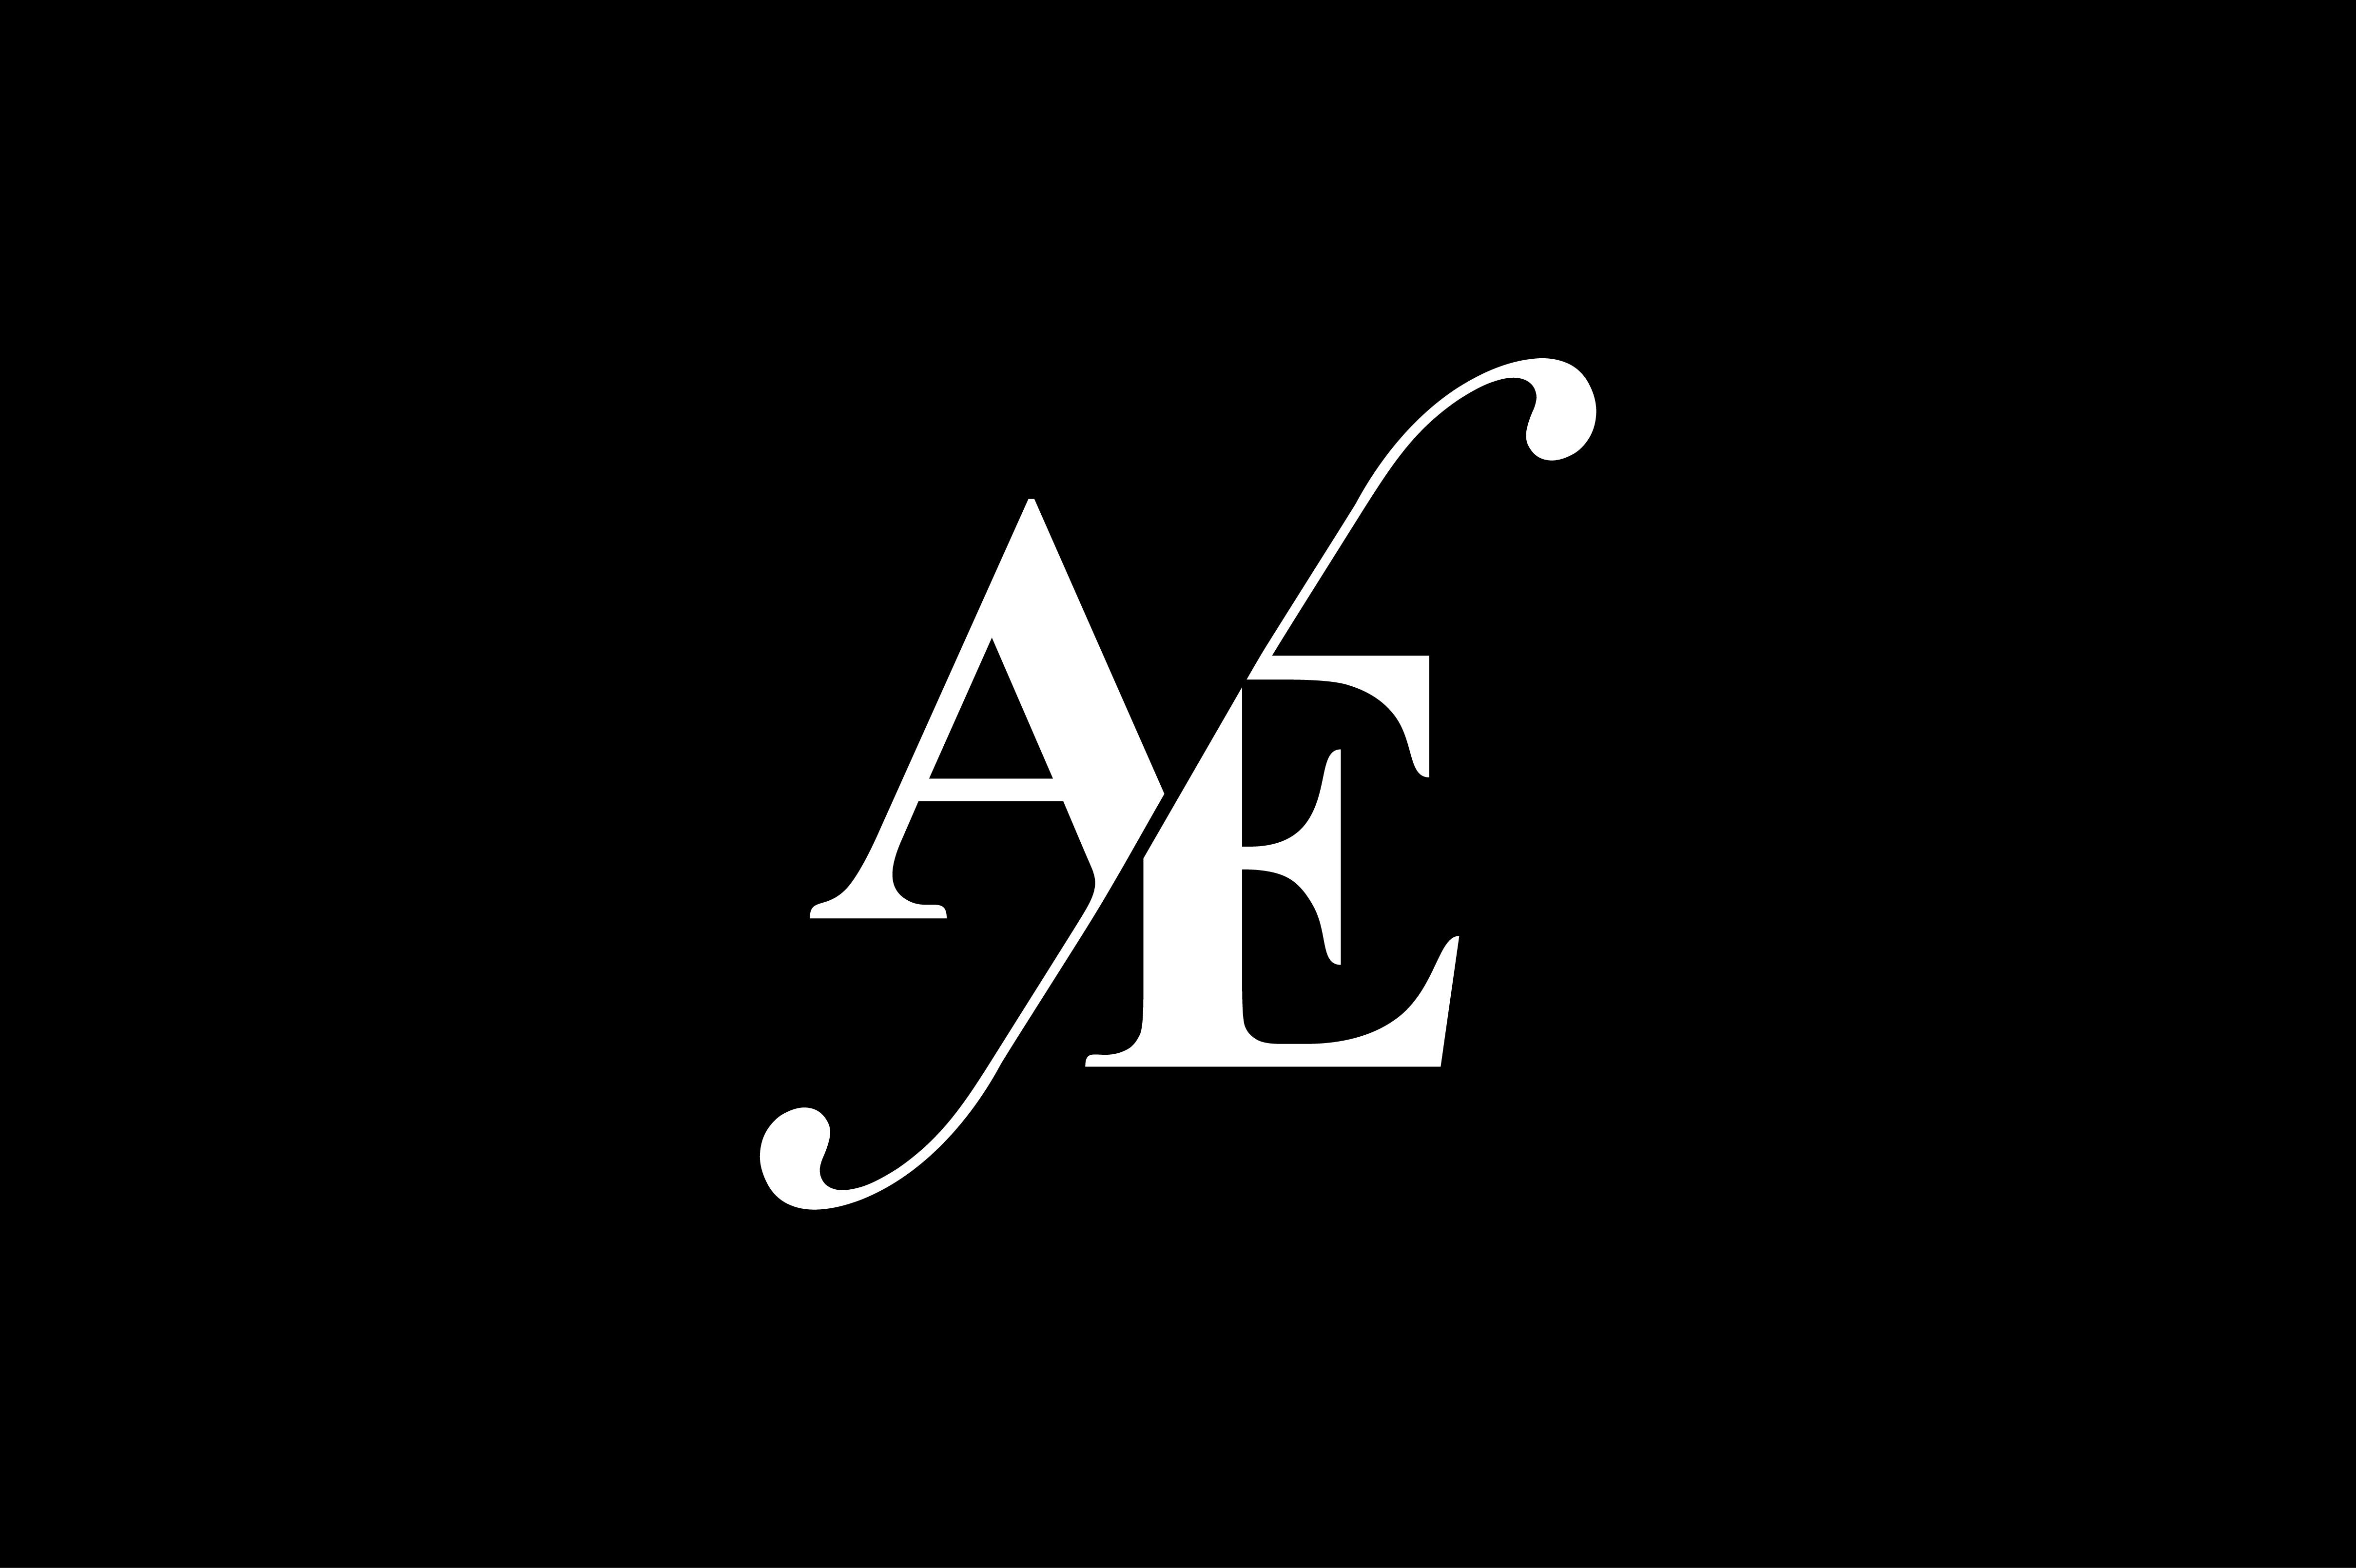 AE Monogram Logo design By Vectorseller